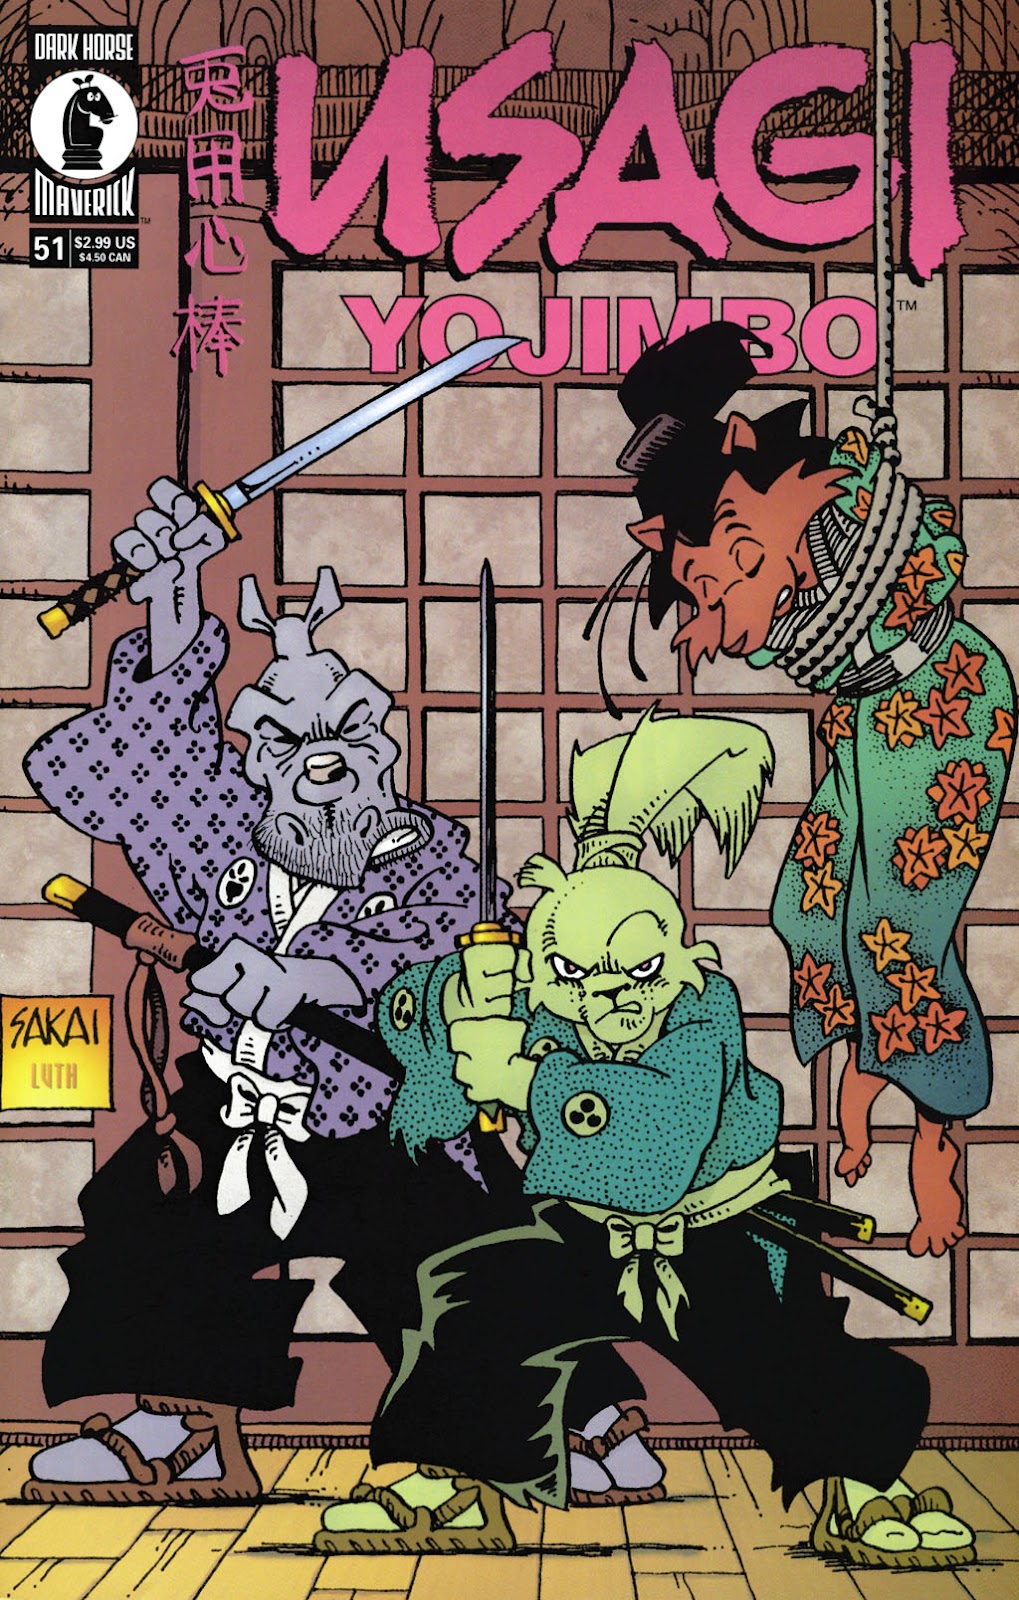 Usagi Yojimbo V3 051 | Read Usagi Yojimbo V3 051 comic online in high ...